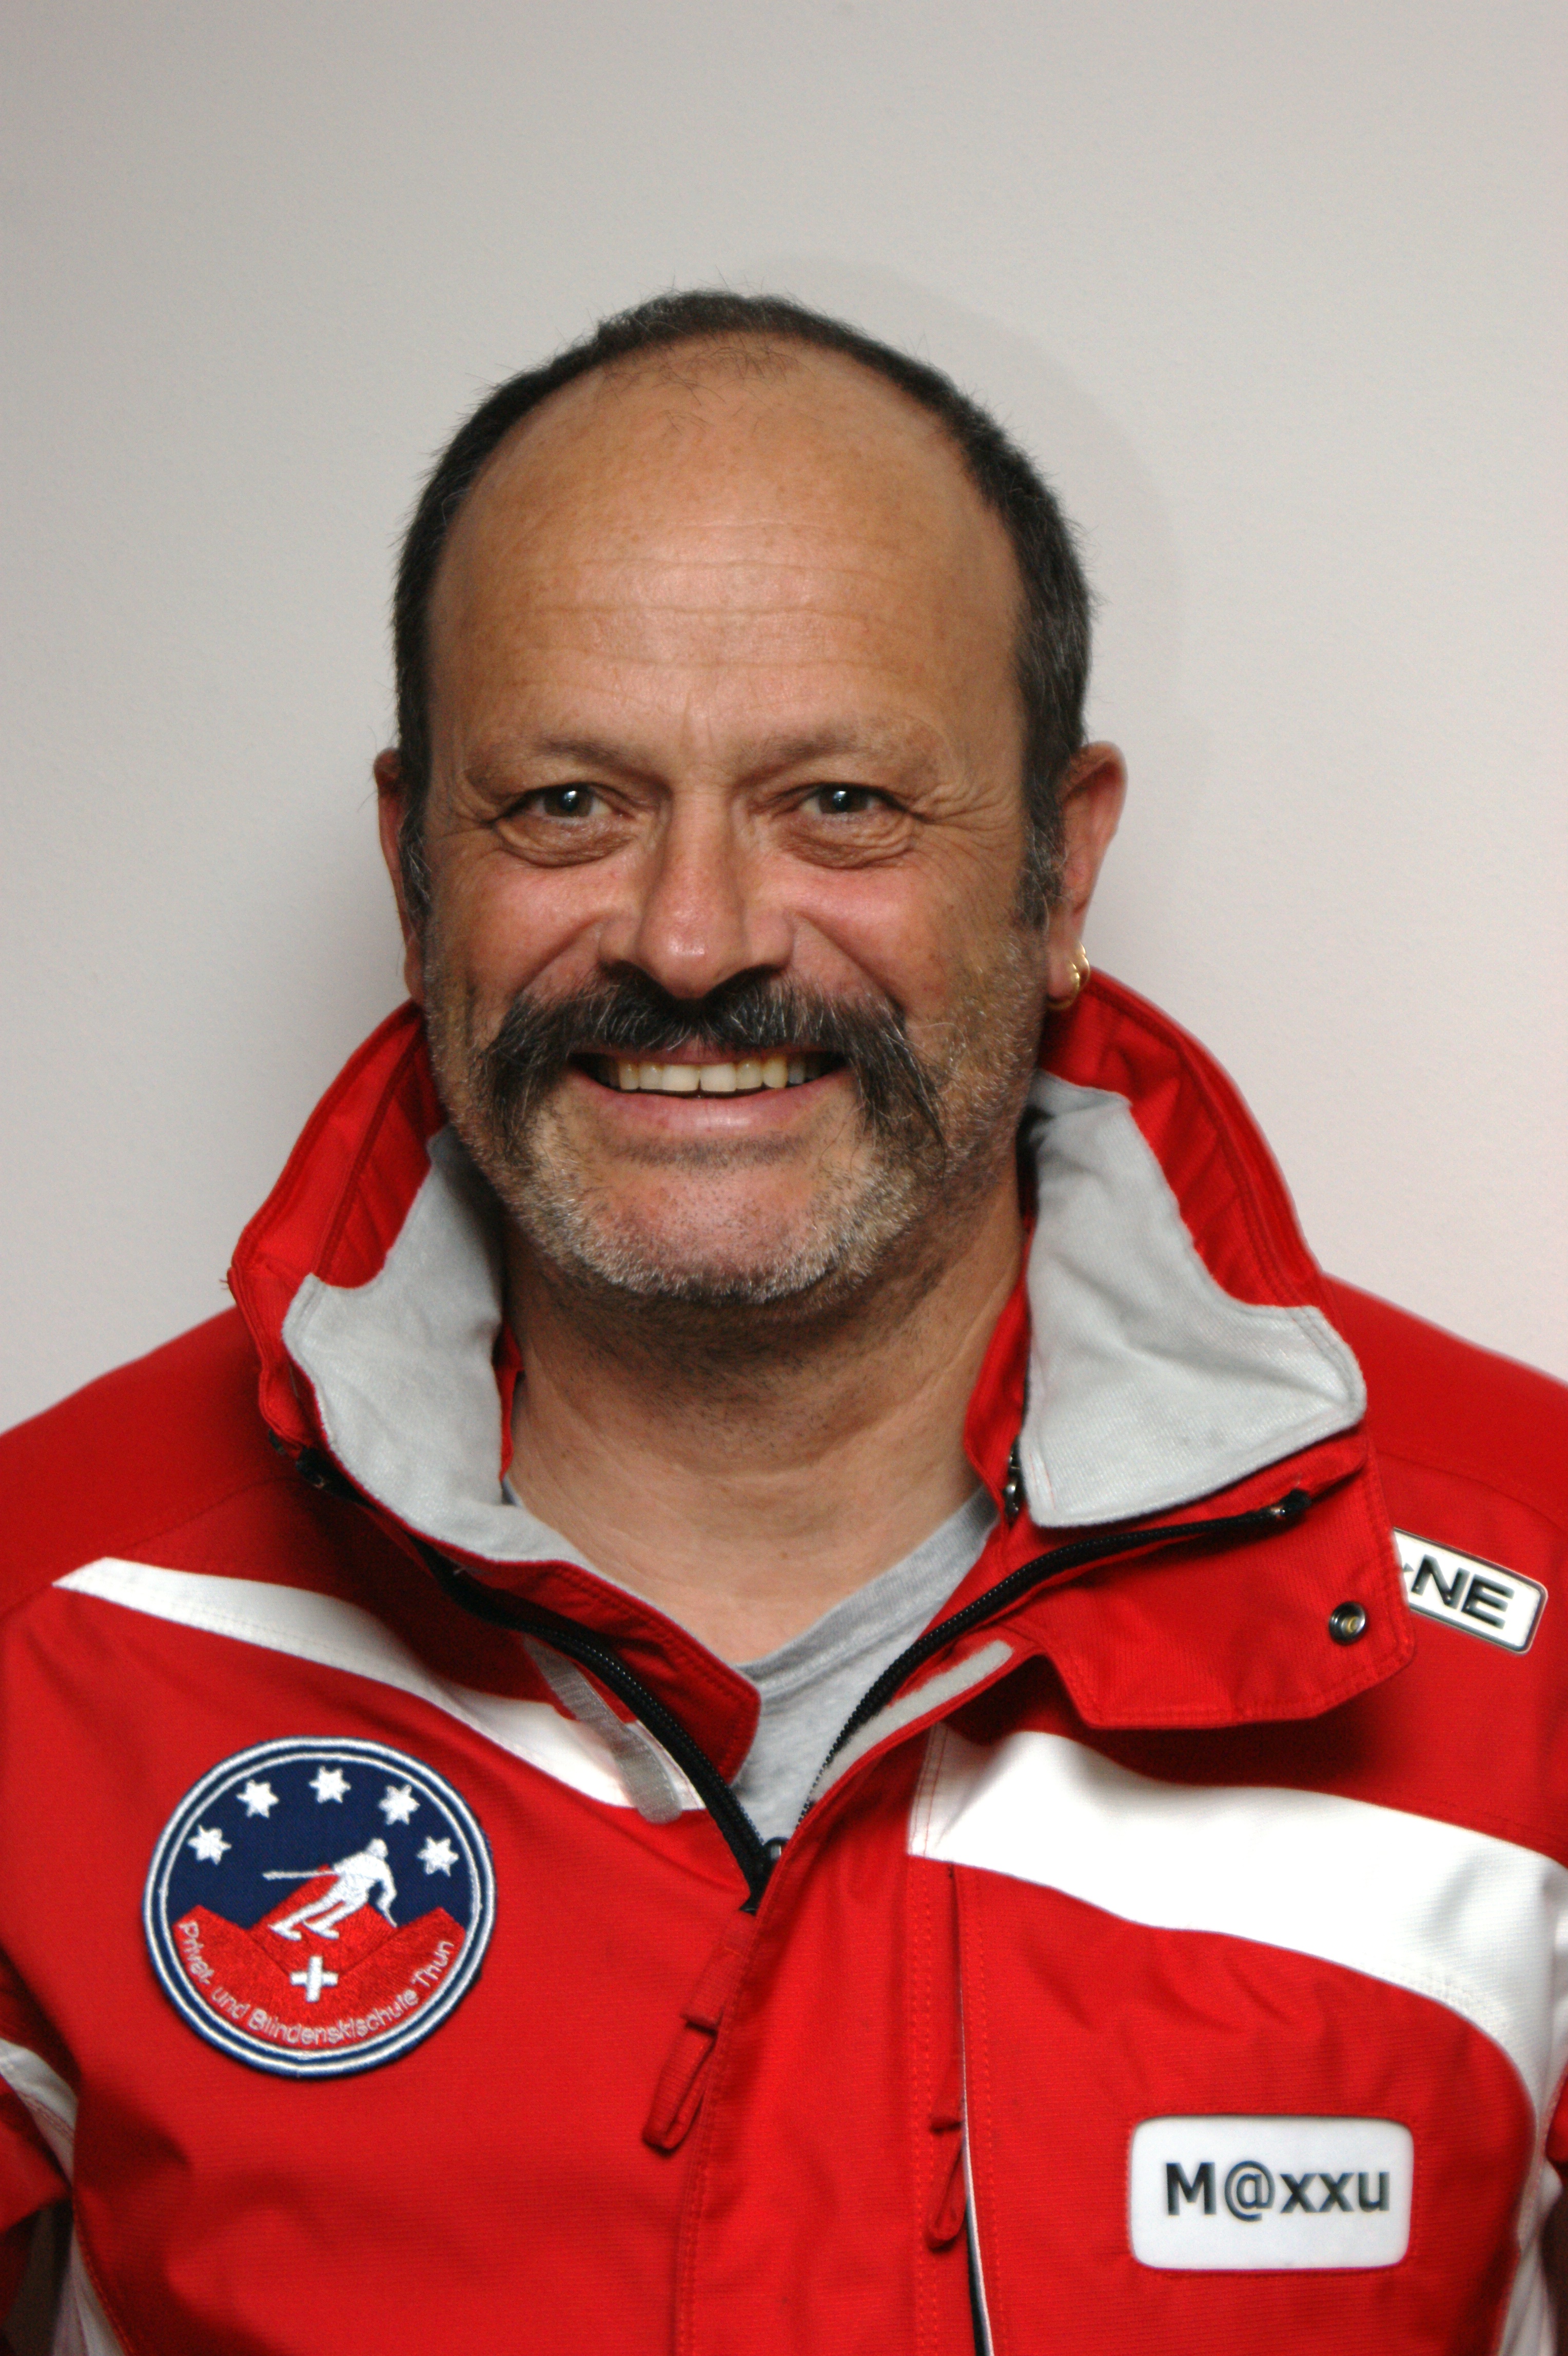 Max Küpfer, Blindenskilehrer und Skilehrer bei der Blindenskischule Thun